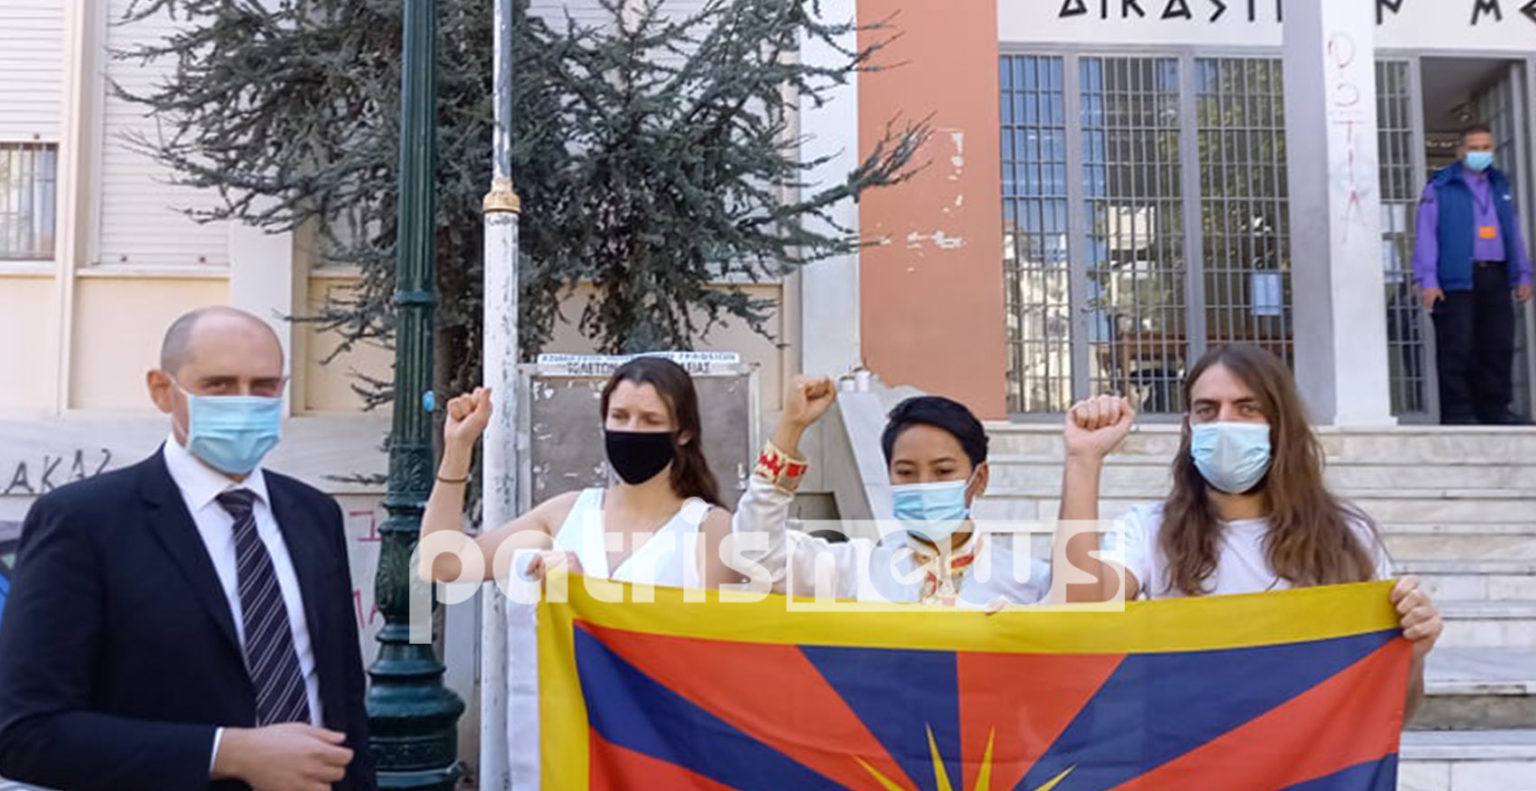 Αυτοί είναι οι 4 Θιβετιανοί ακτιβιστές που έκαναν άνω κάτω την Αρχαία Ολυμπία